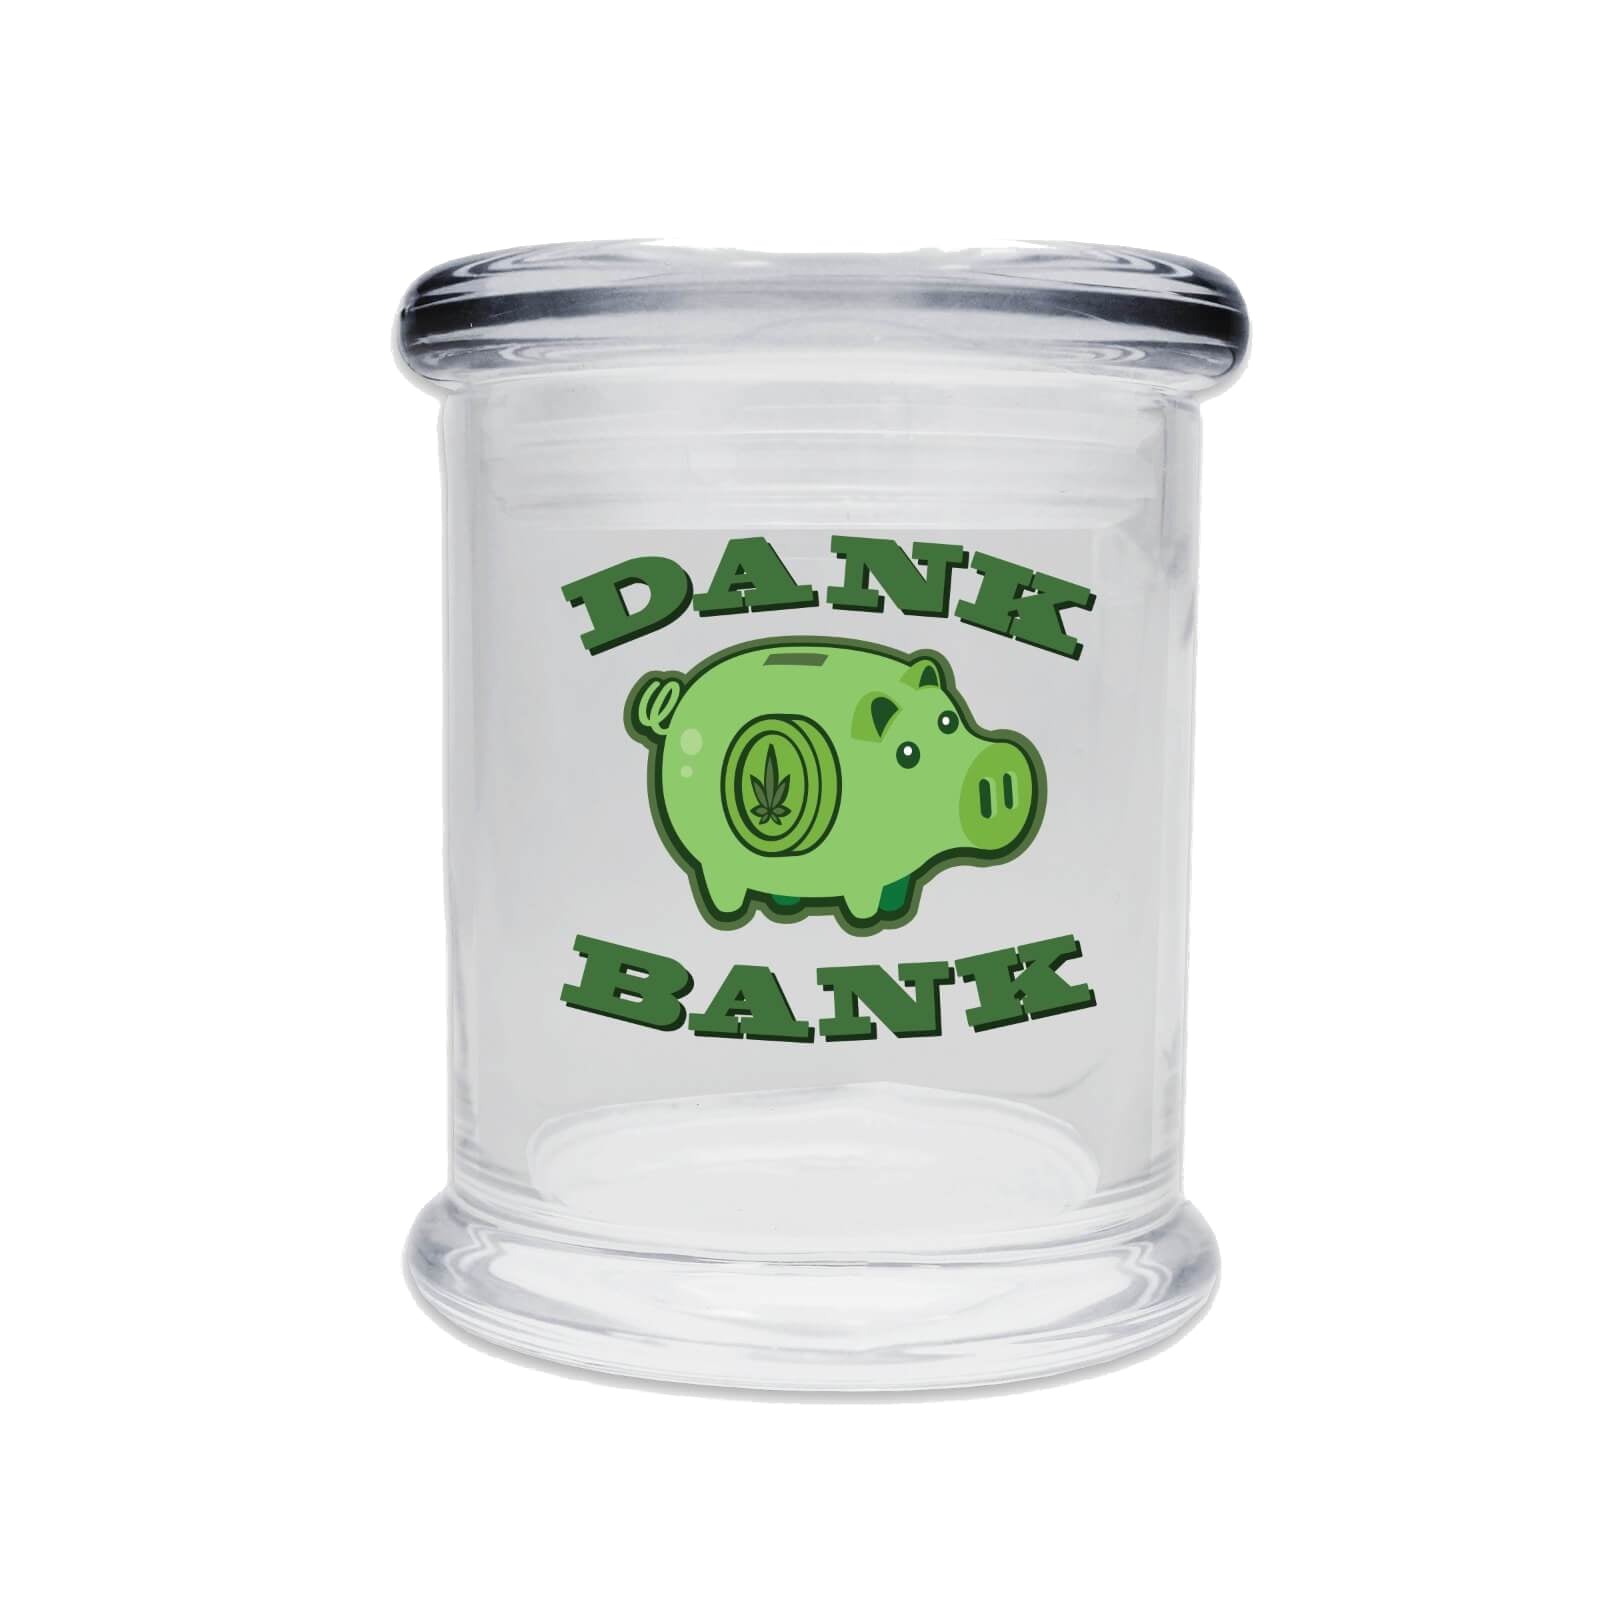 juggz glass stash jar dank bank green